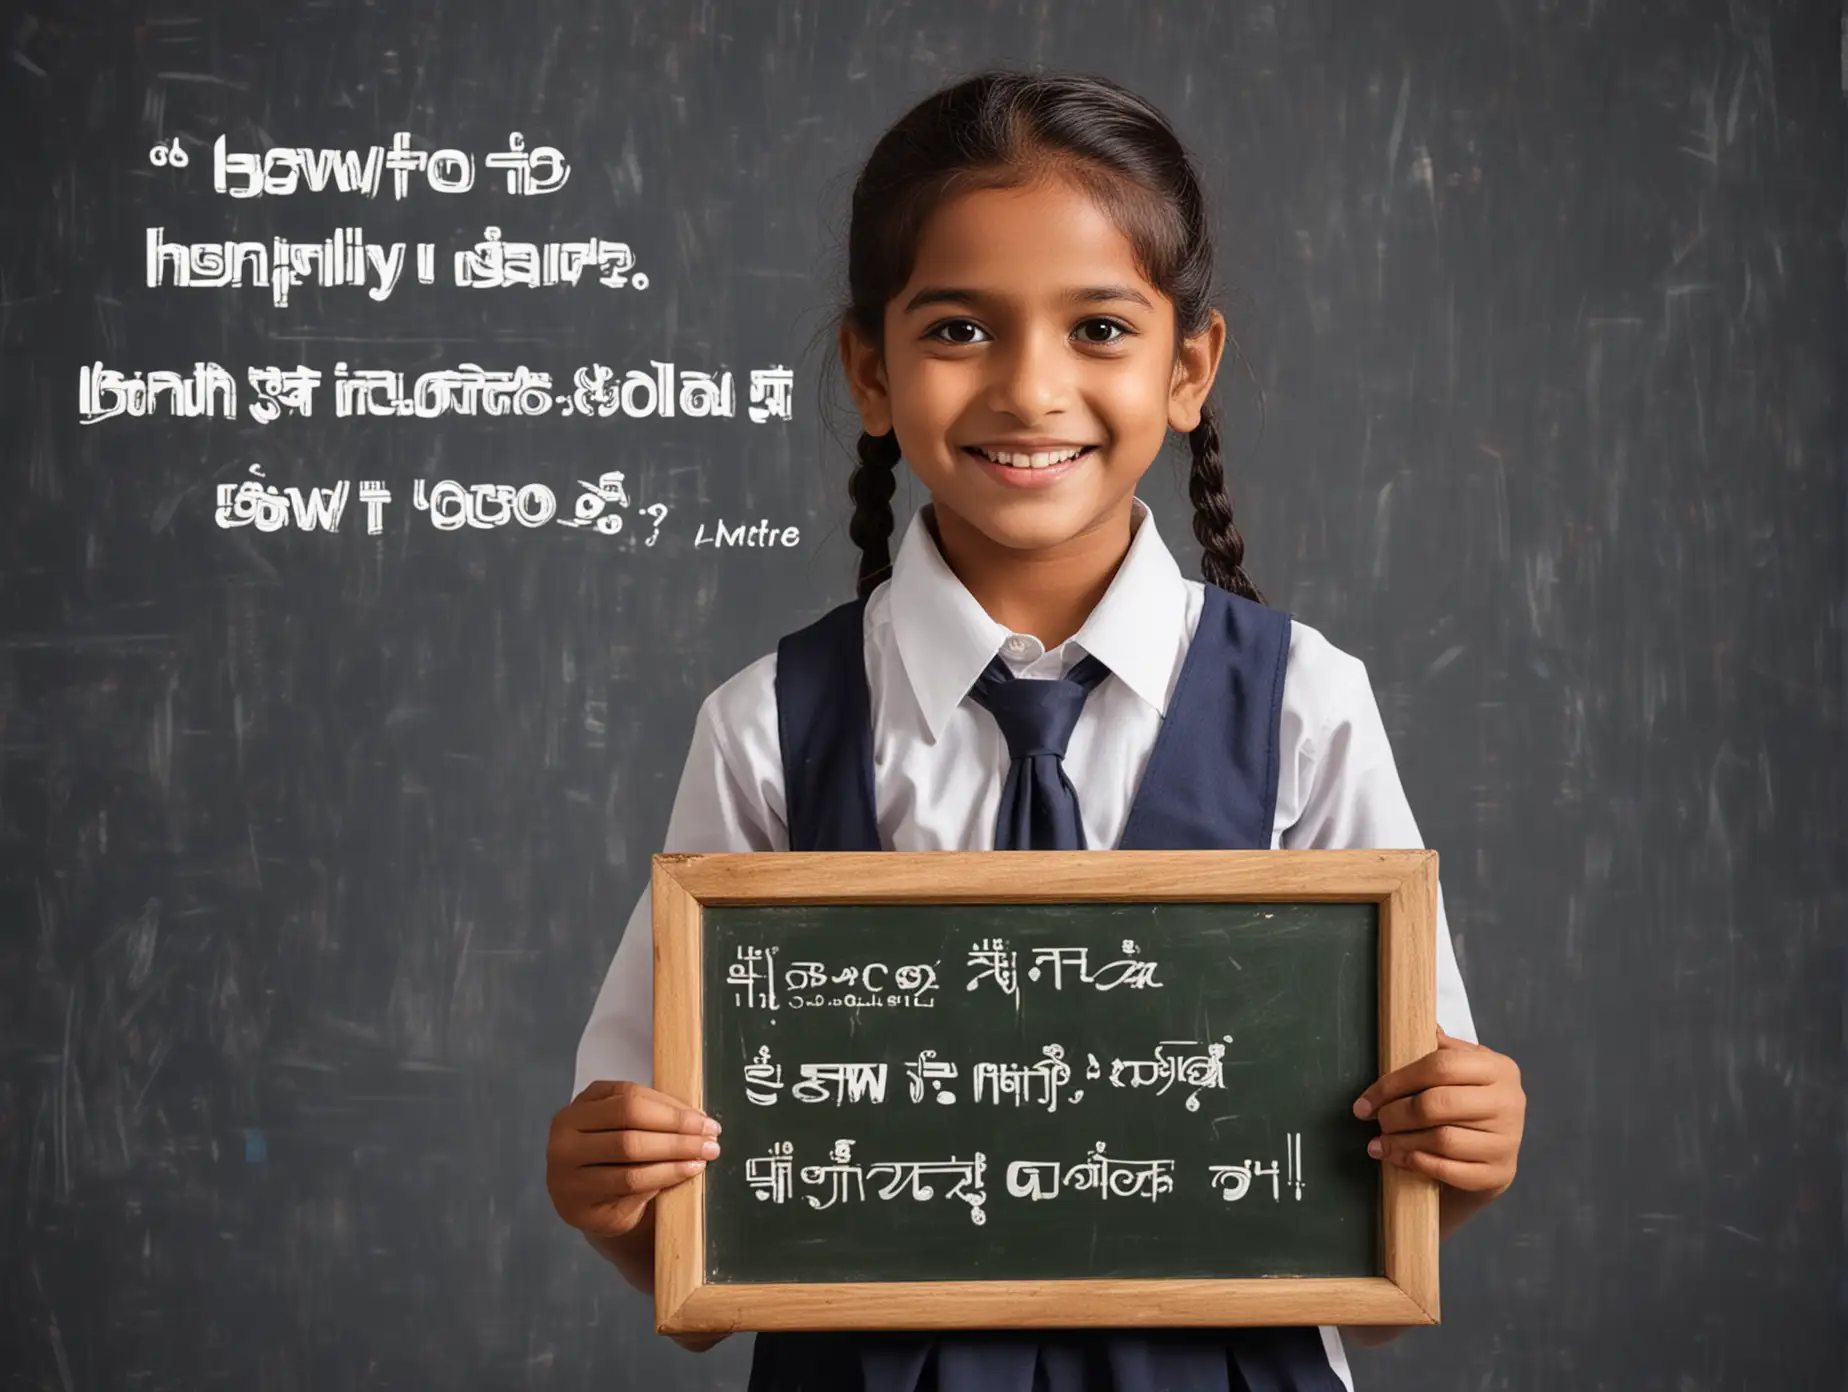 一个印度小孩穿着校服，举着木牌子，开心地笑着。木牌子用加粗的字体清晰地写着，“HOW TO LEARNING HAPPILY “GO&FIND ODA” 